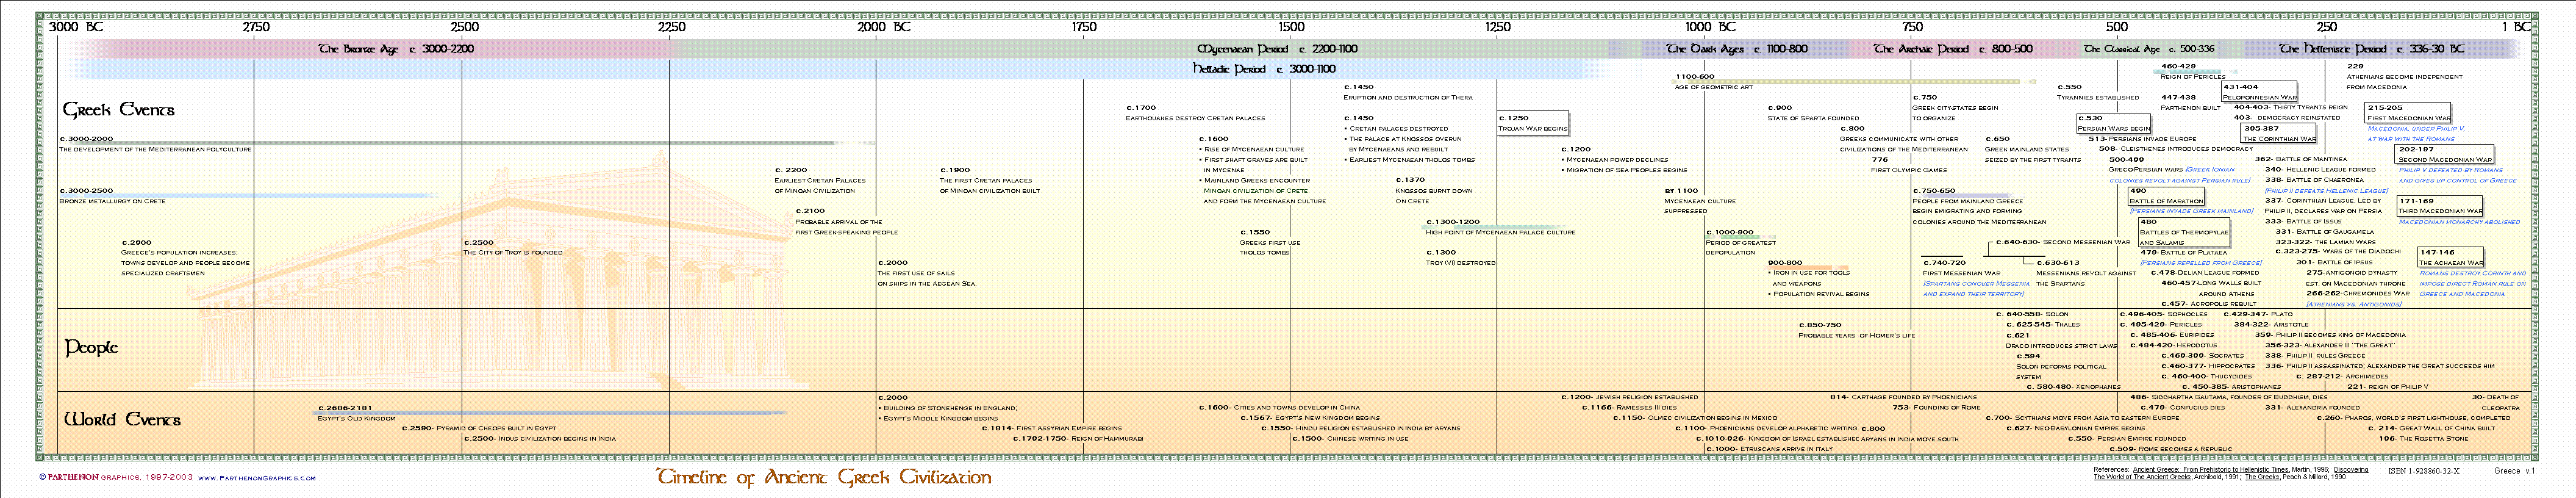 Timeline of AncientGreece